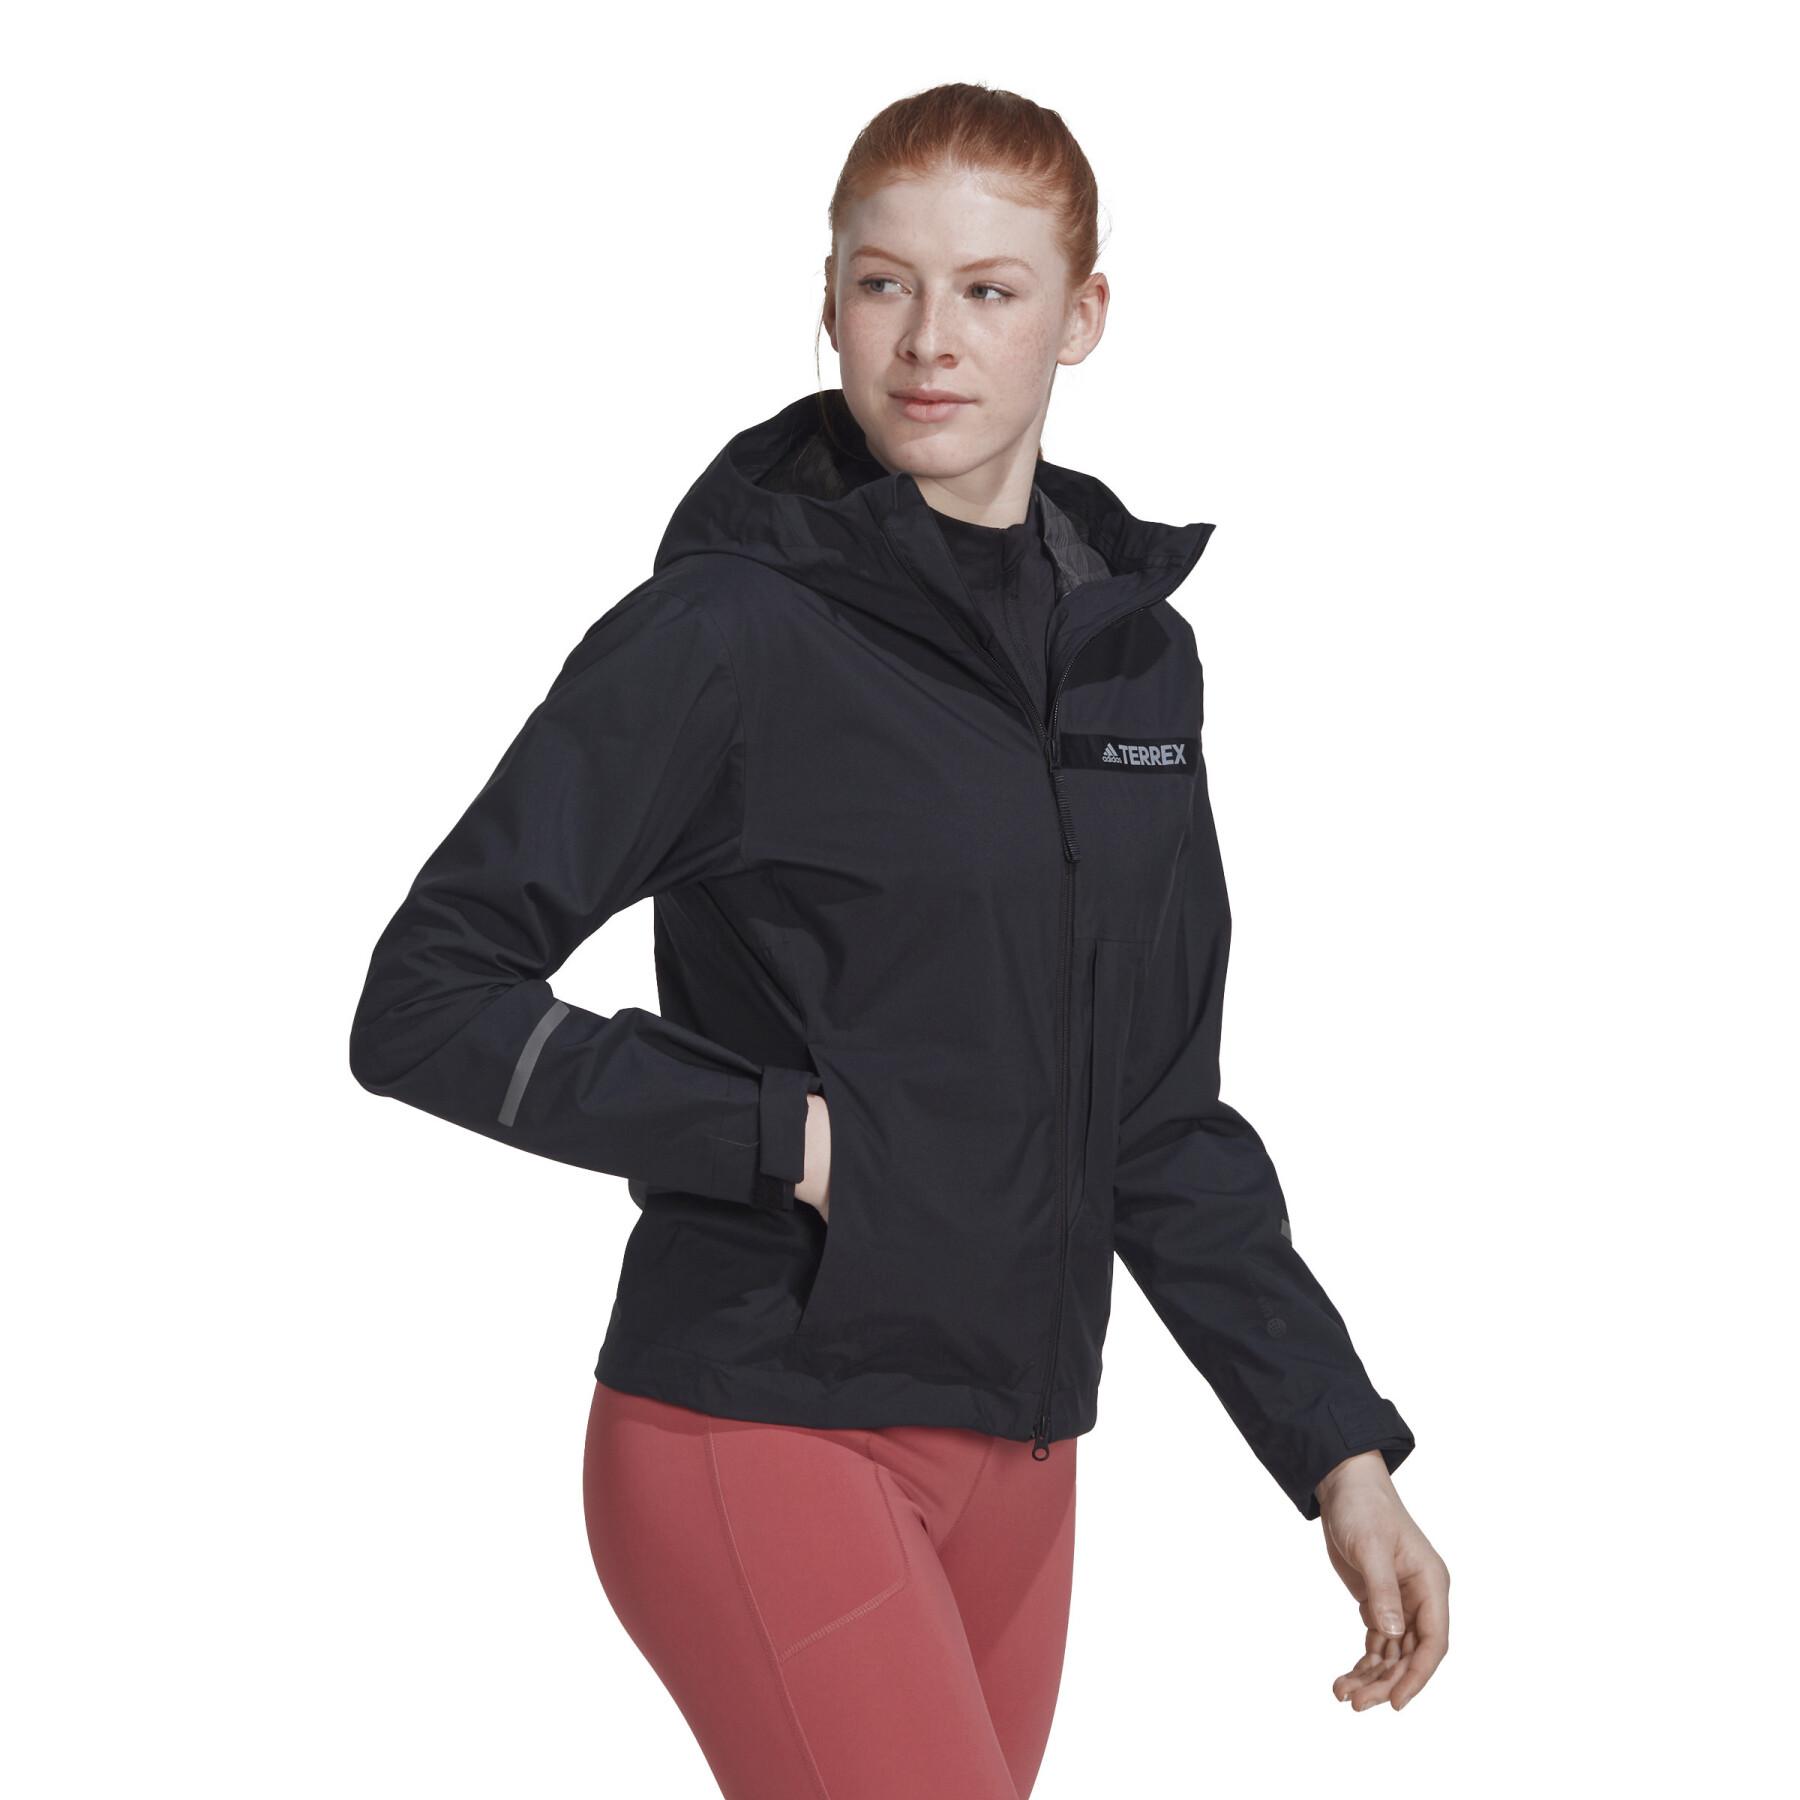 2.5 layer waterproof jacket for women adidas Terrex Multi Rain.Rdy